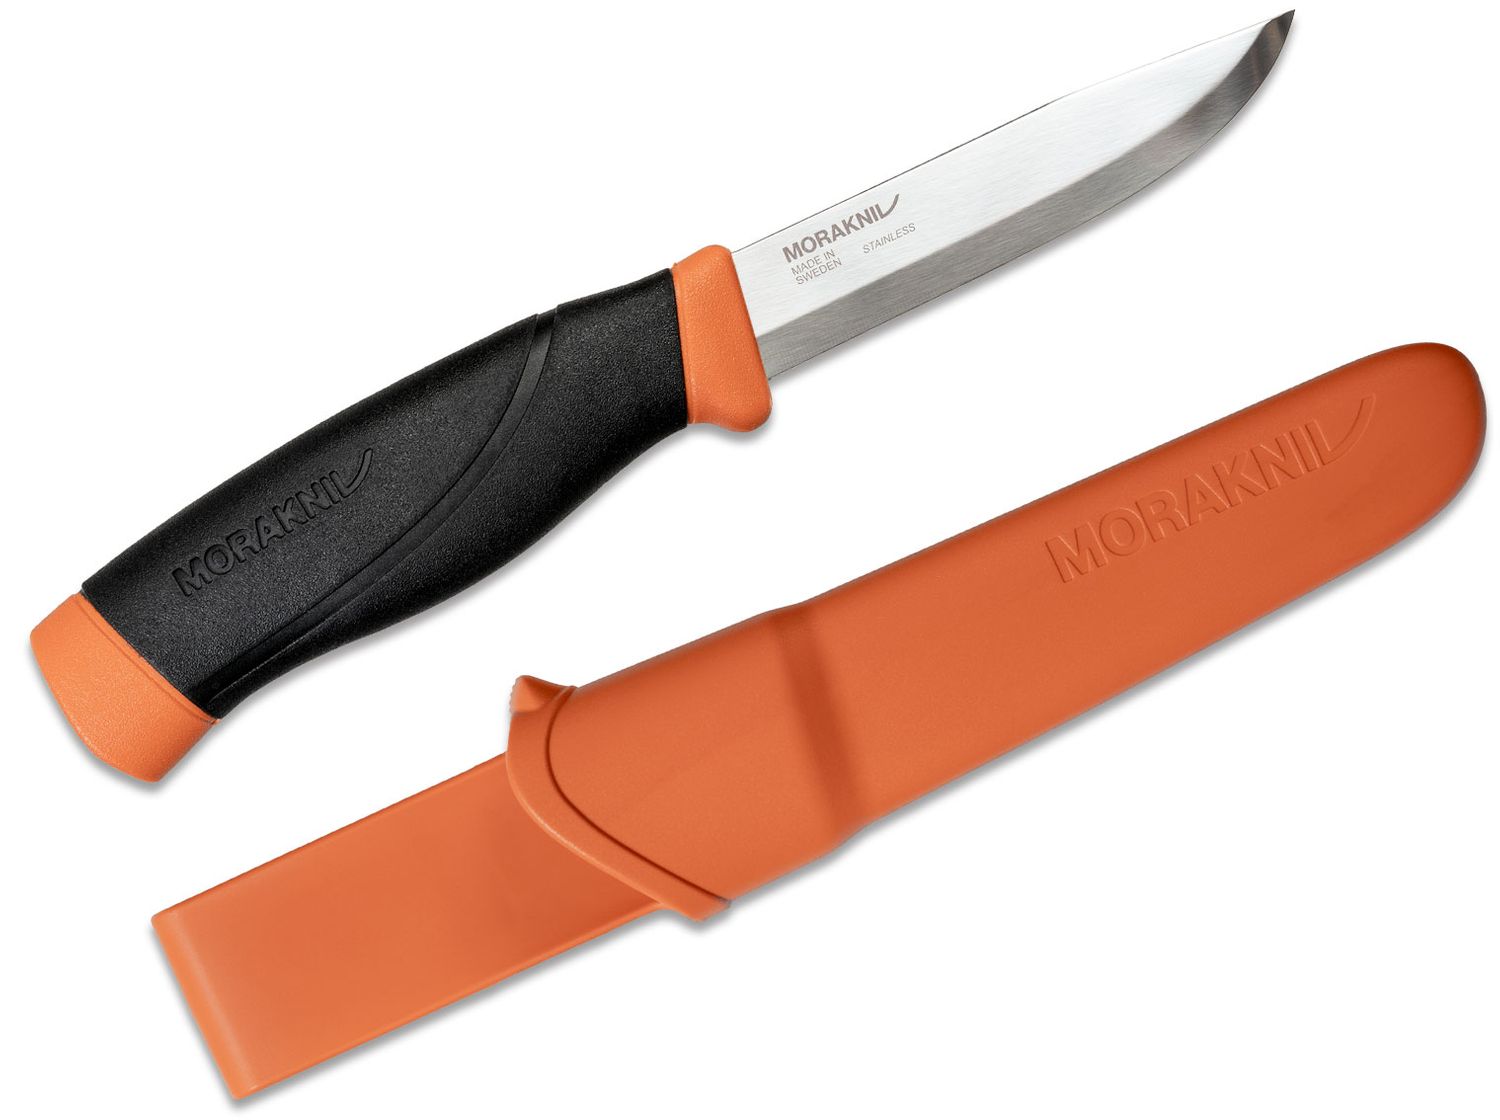 Morakniv Mora of Sweden Heavy-Duty Companion Knife 4.1 Stainless Steel  Blade, Burnt Orange/Black Rubber Handle - KnifeCenter - M-13259